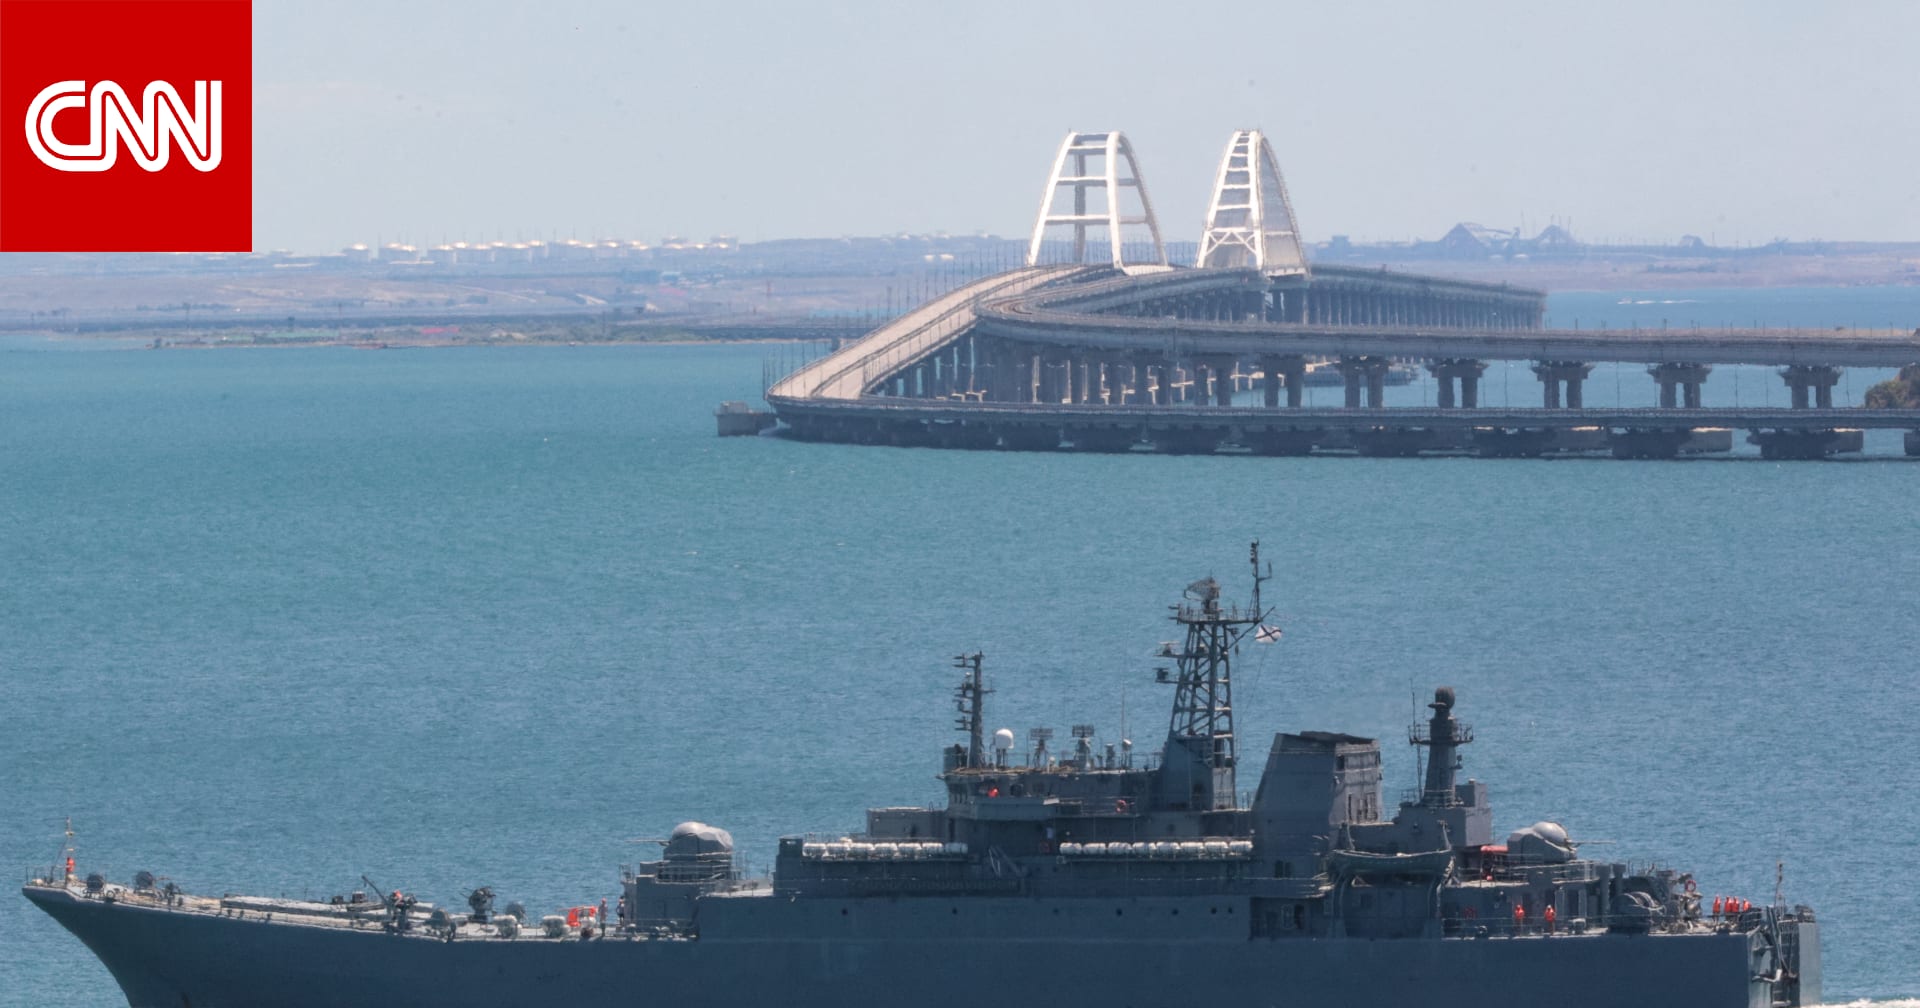 الدفاع الروسية: تعرض سفينة إنزال كبيرة تابعة للبحرية لـ"ضرر" بهجوم أوكراني في القرم